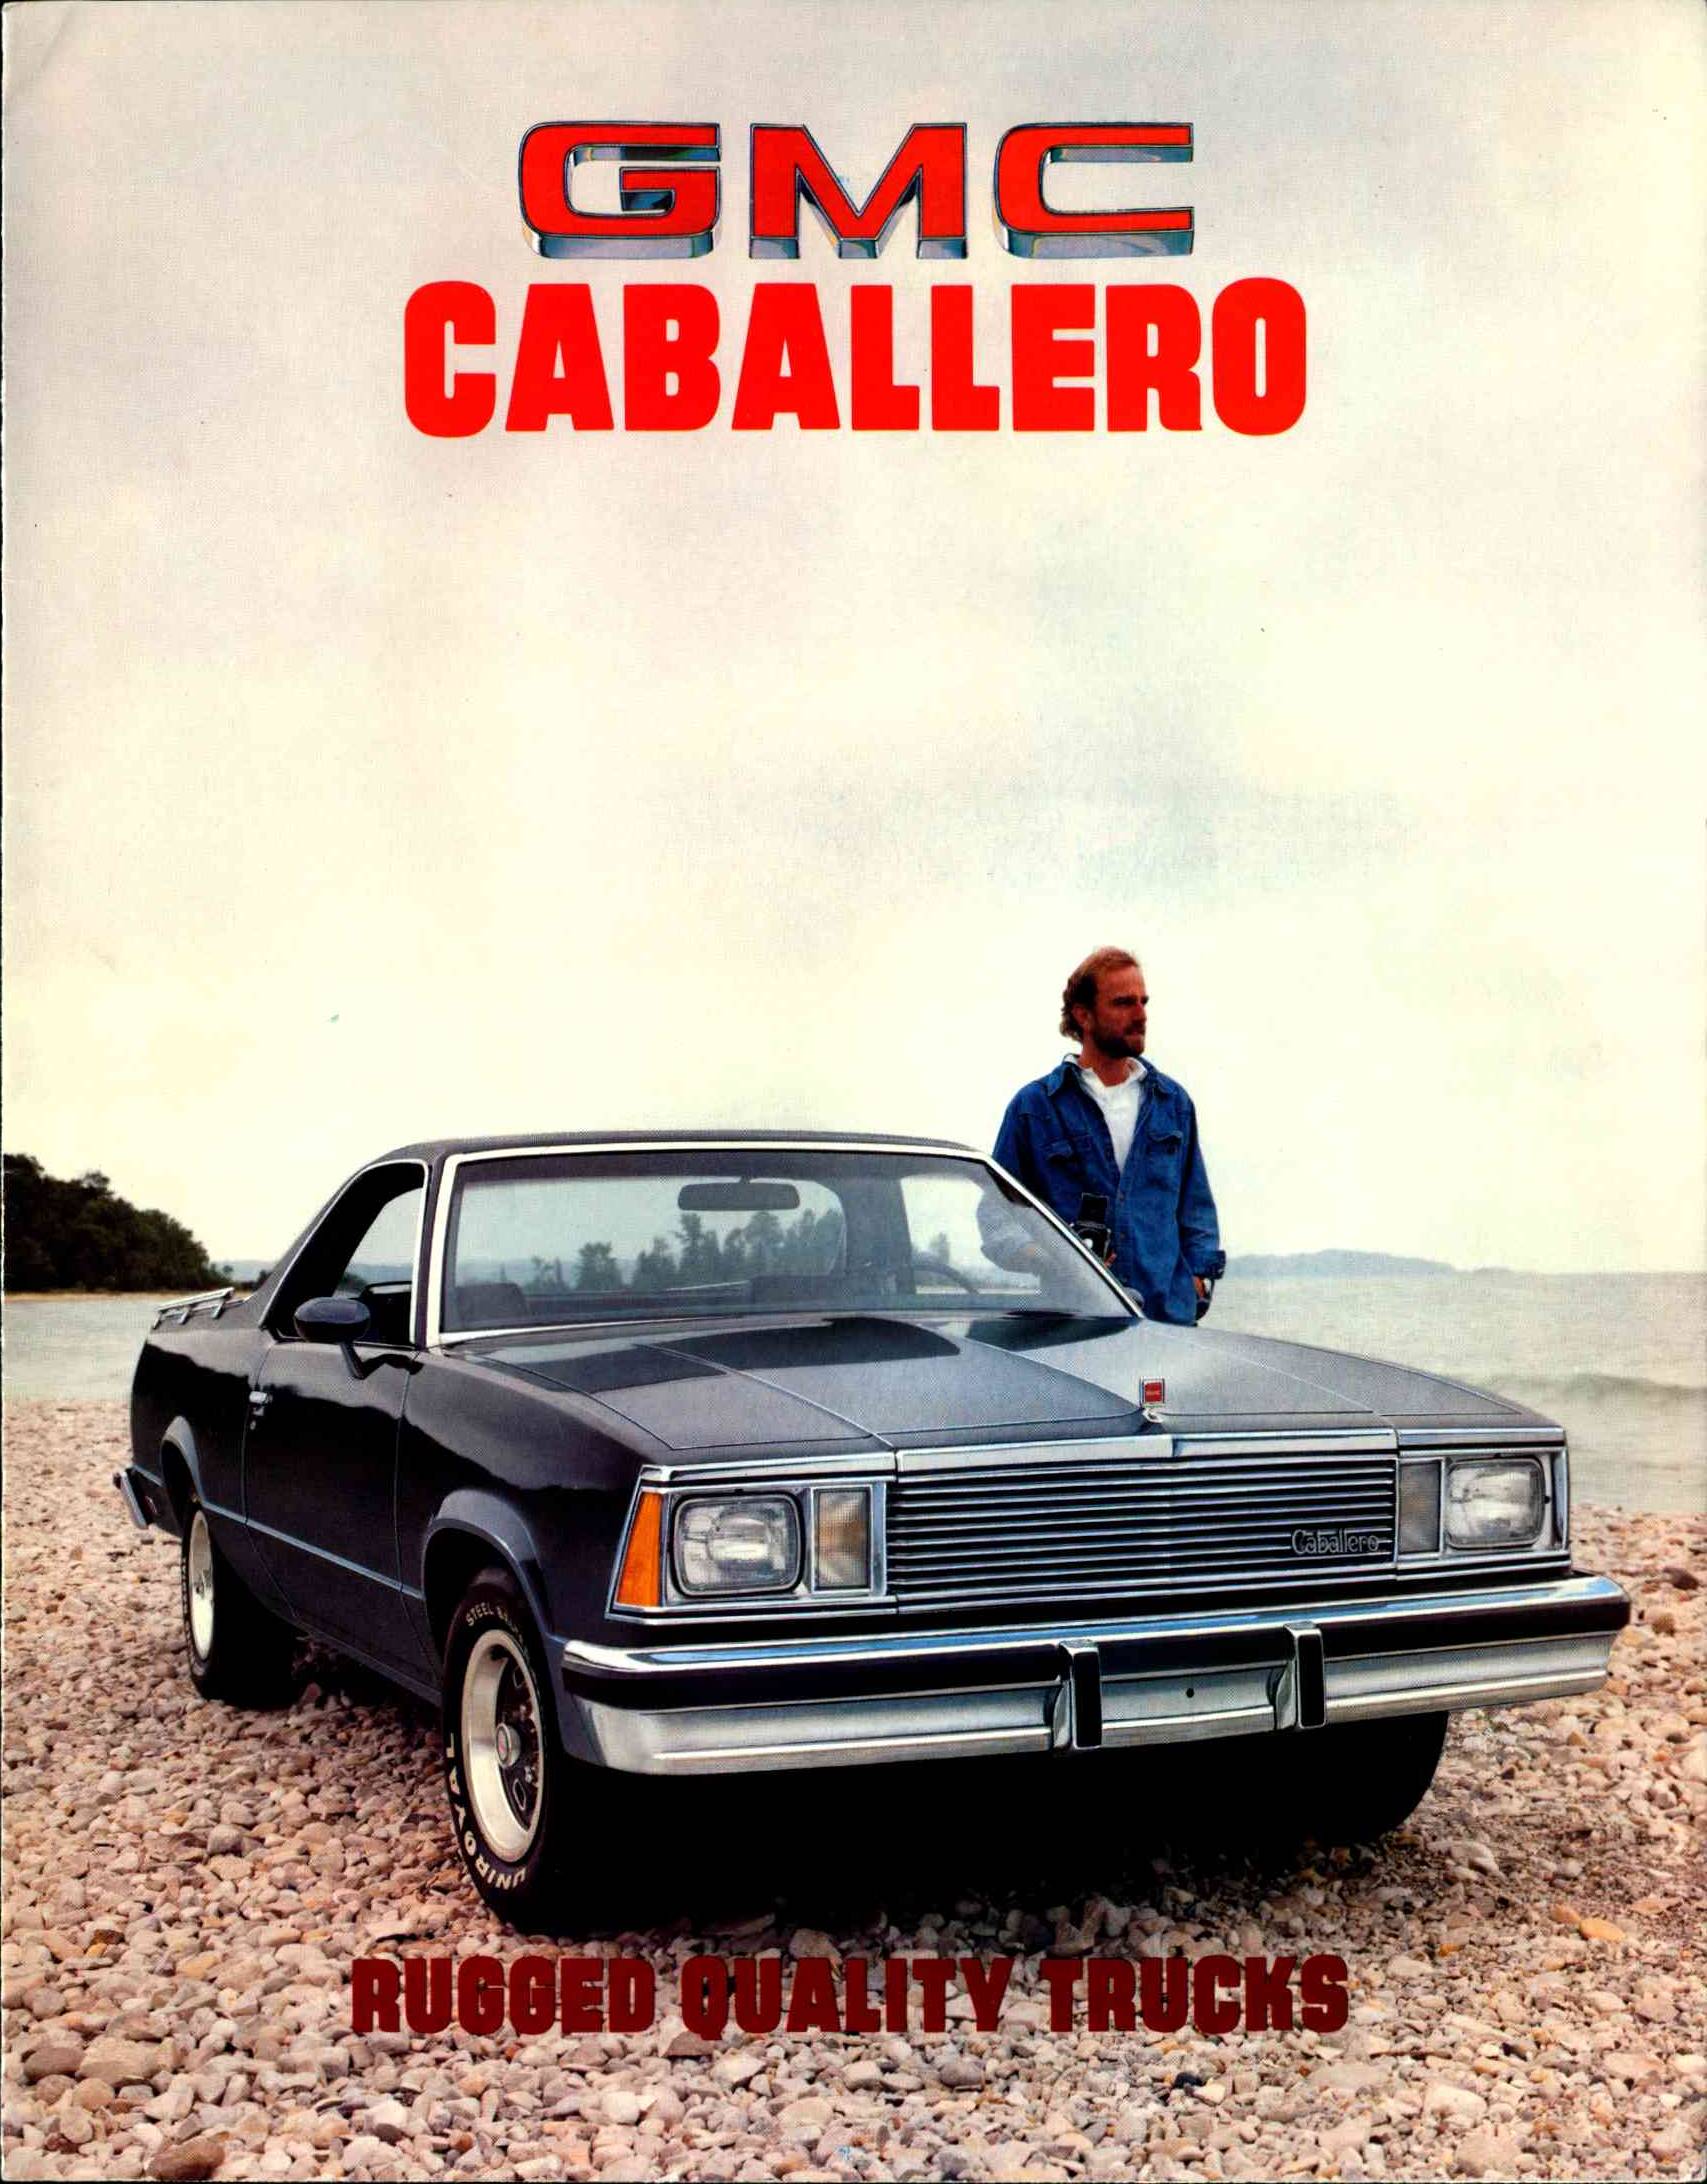 1981 GMC Caballero Brochure 01